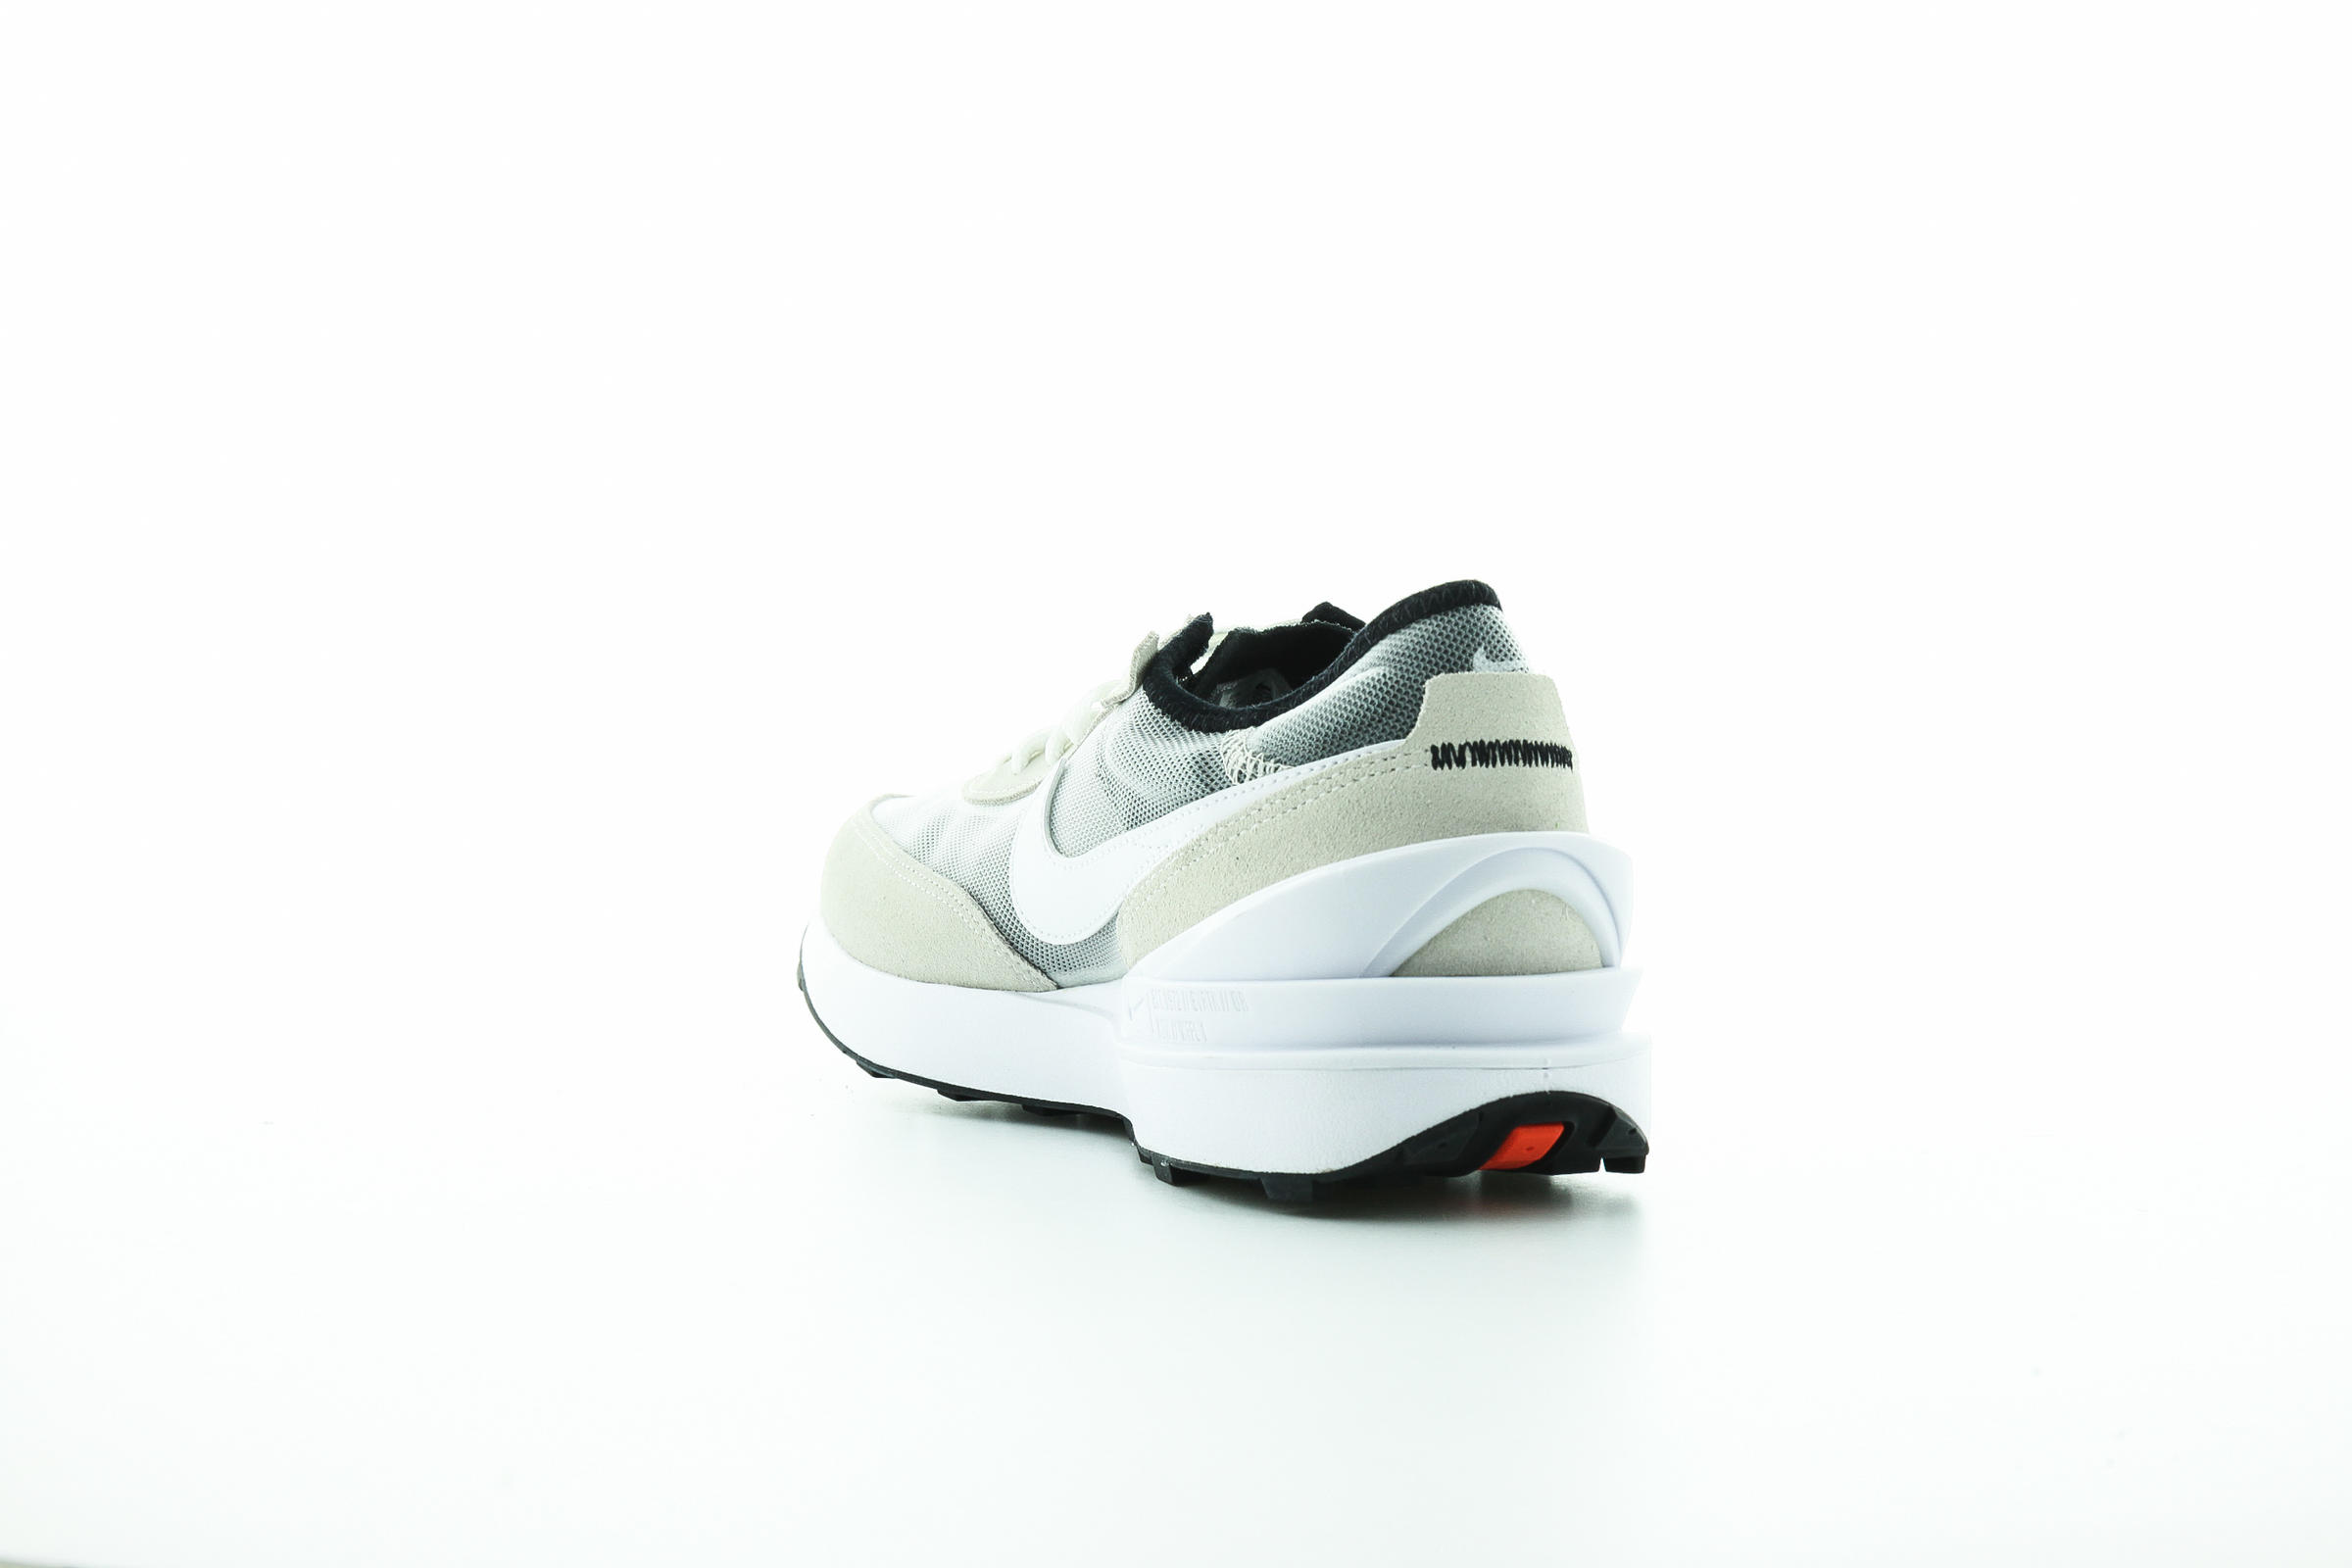 Nike WAFFLE ONE (GS) "SUMMIT WHITE"